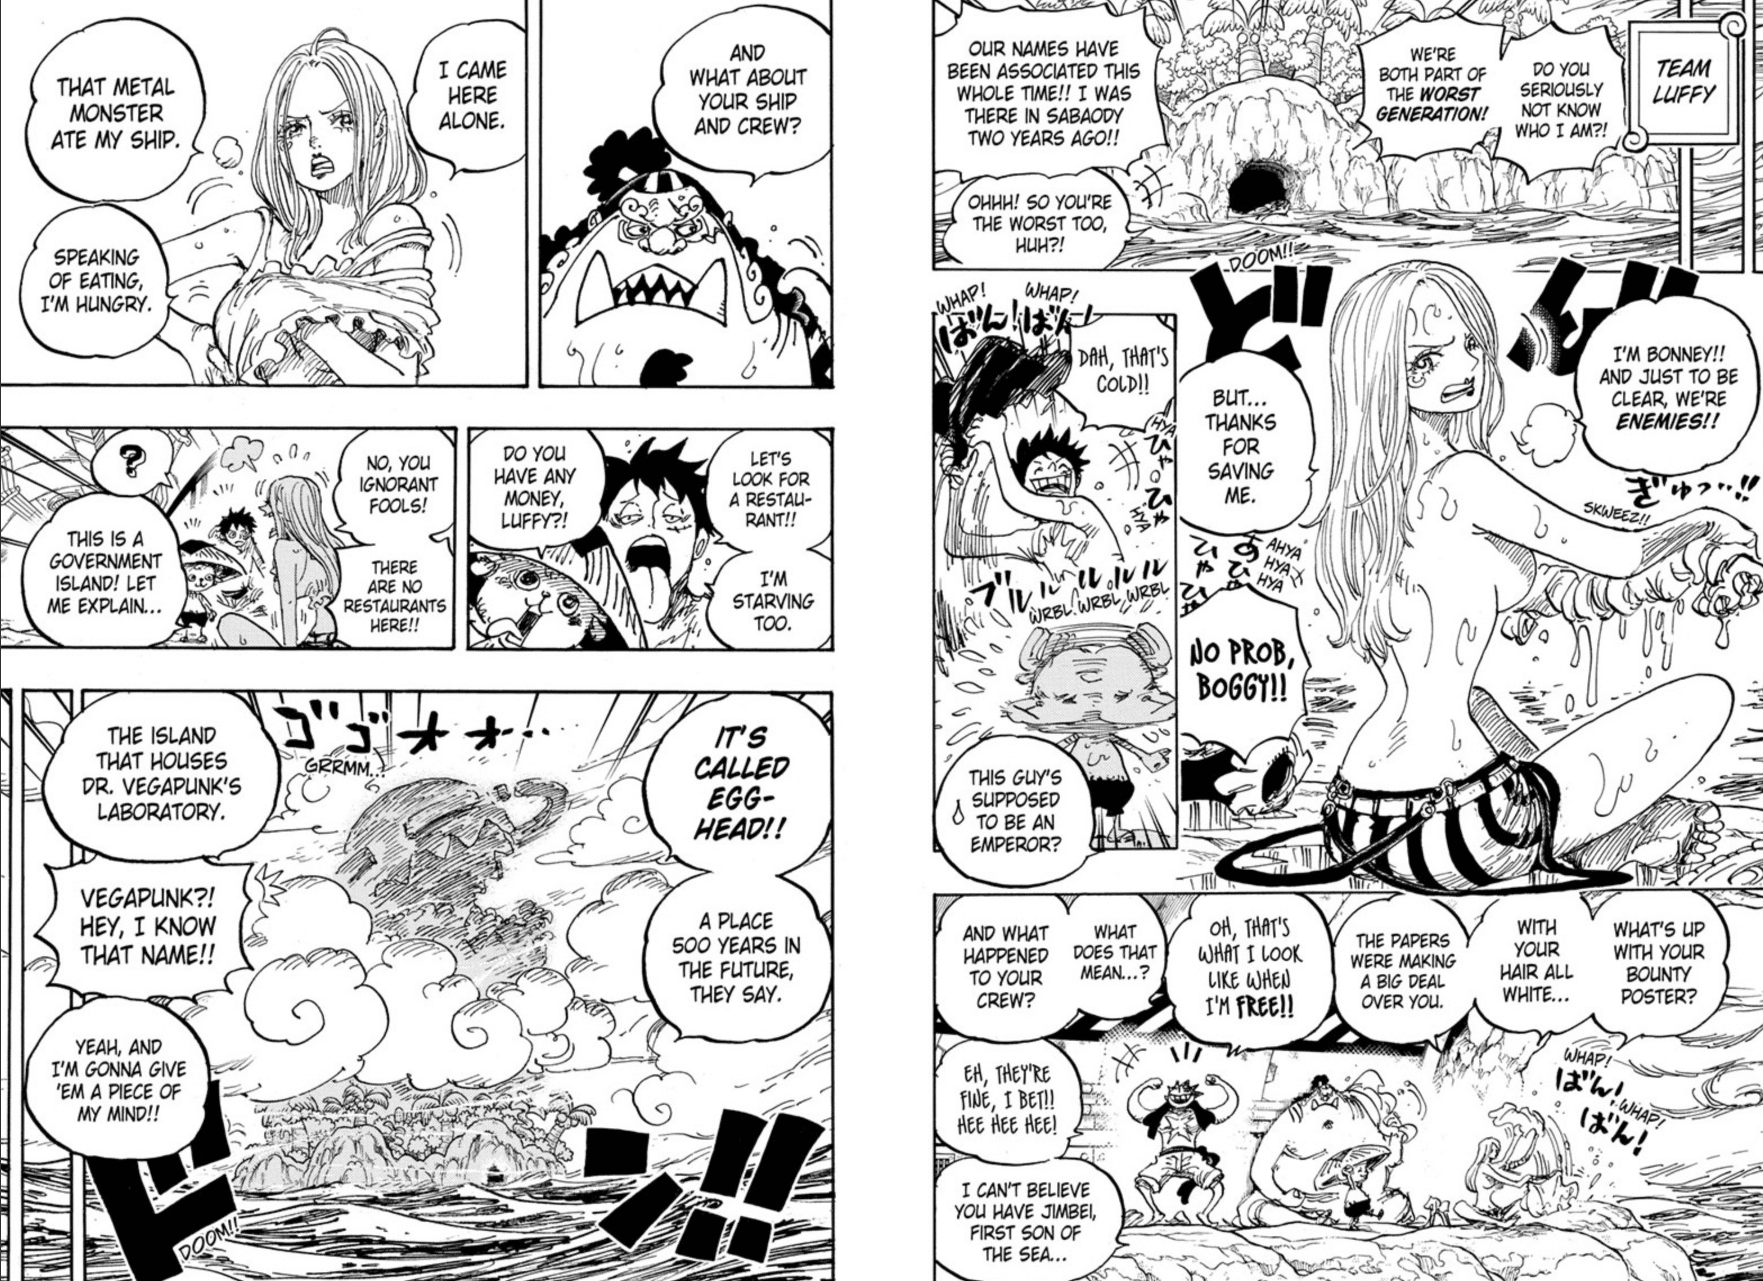 One Piece chapitre 1061